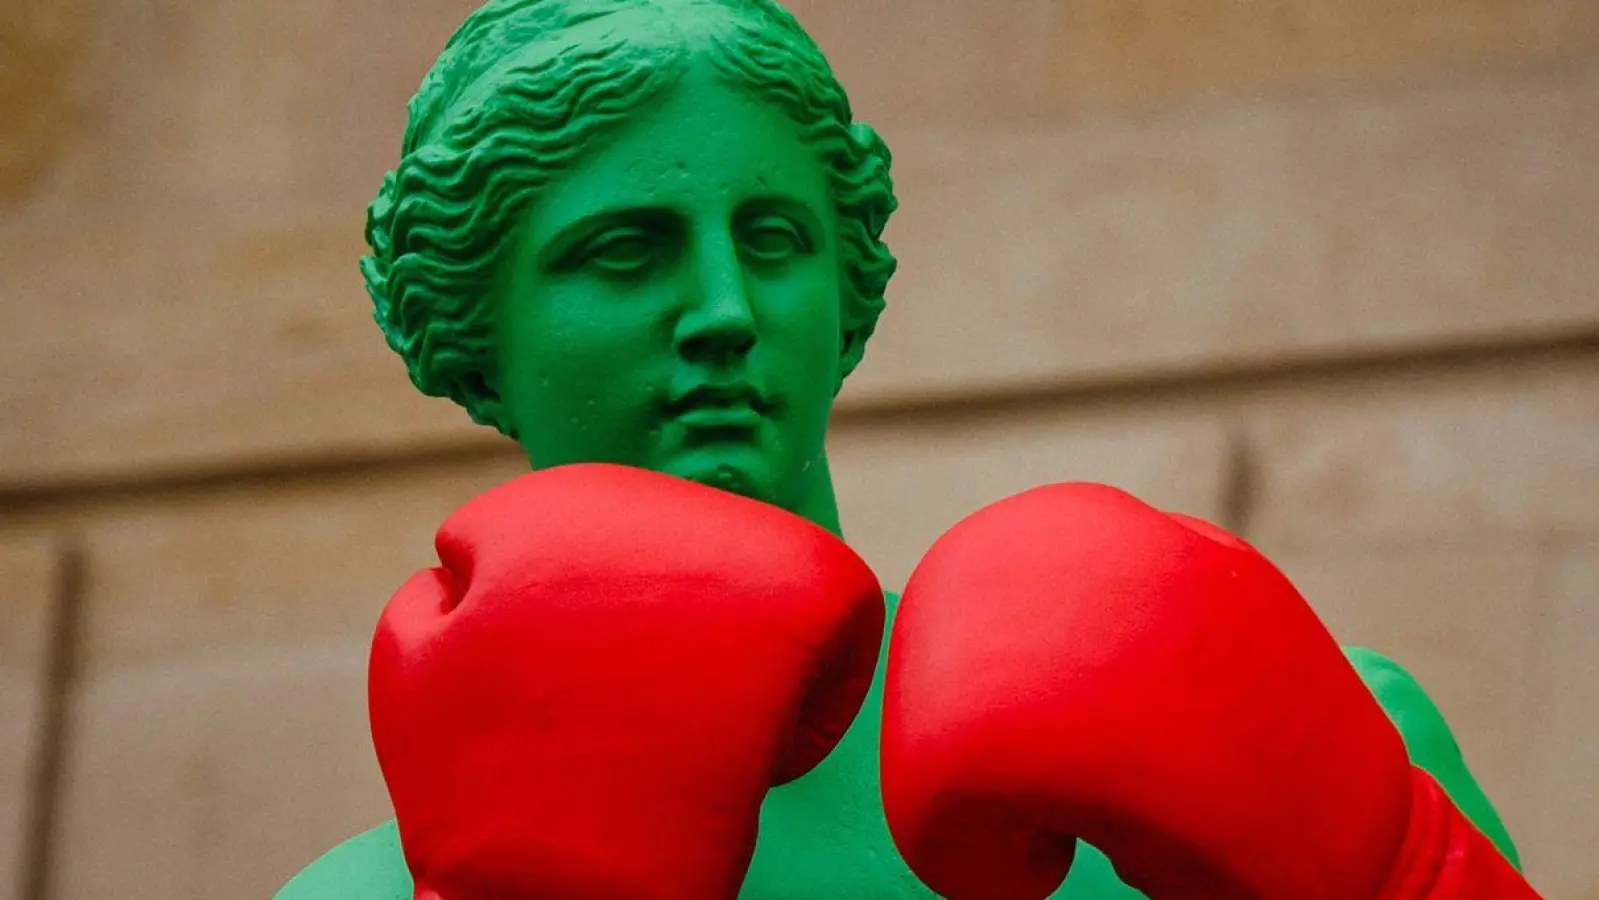 Eine Venus von Milo-Skulptur als Teil einer Installation des französischen Künstlers Laurent Perbos ist in Paris ausgestellt. Die Installation besteht aus sechs Skulpturen, wobei jede der Skulpturen verschiedene Sportarten der Olympischen und Paralympischen Spiele verkörpert. (Foto: Dimitar Dilkoff/AFP/dpa)